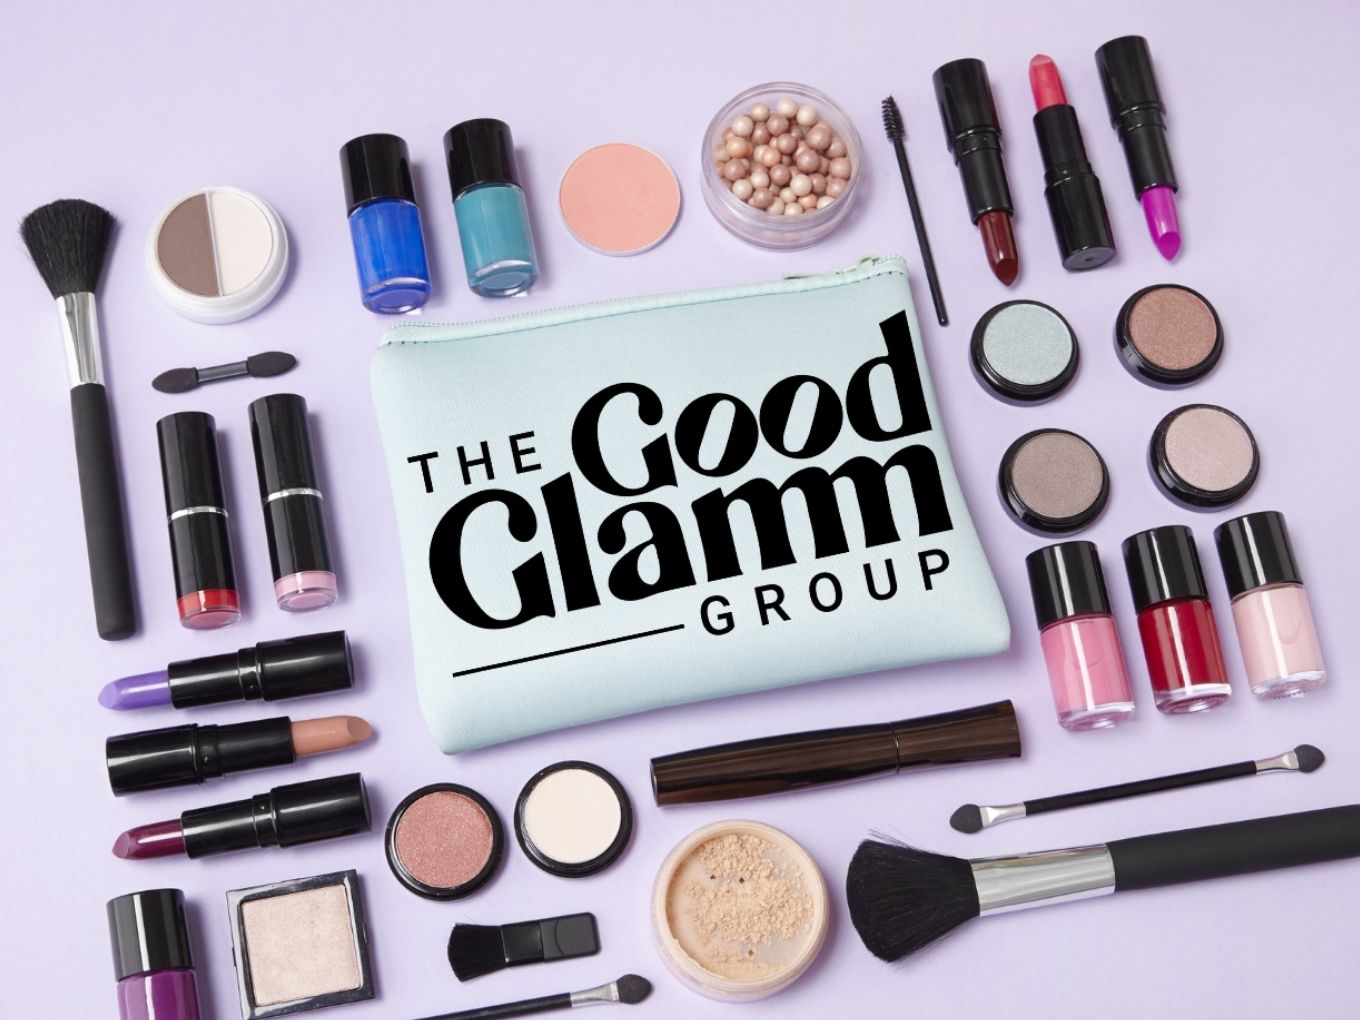 即将上市的 Good Glamm Group 在重组活动中裁员 150 名